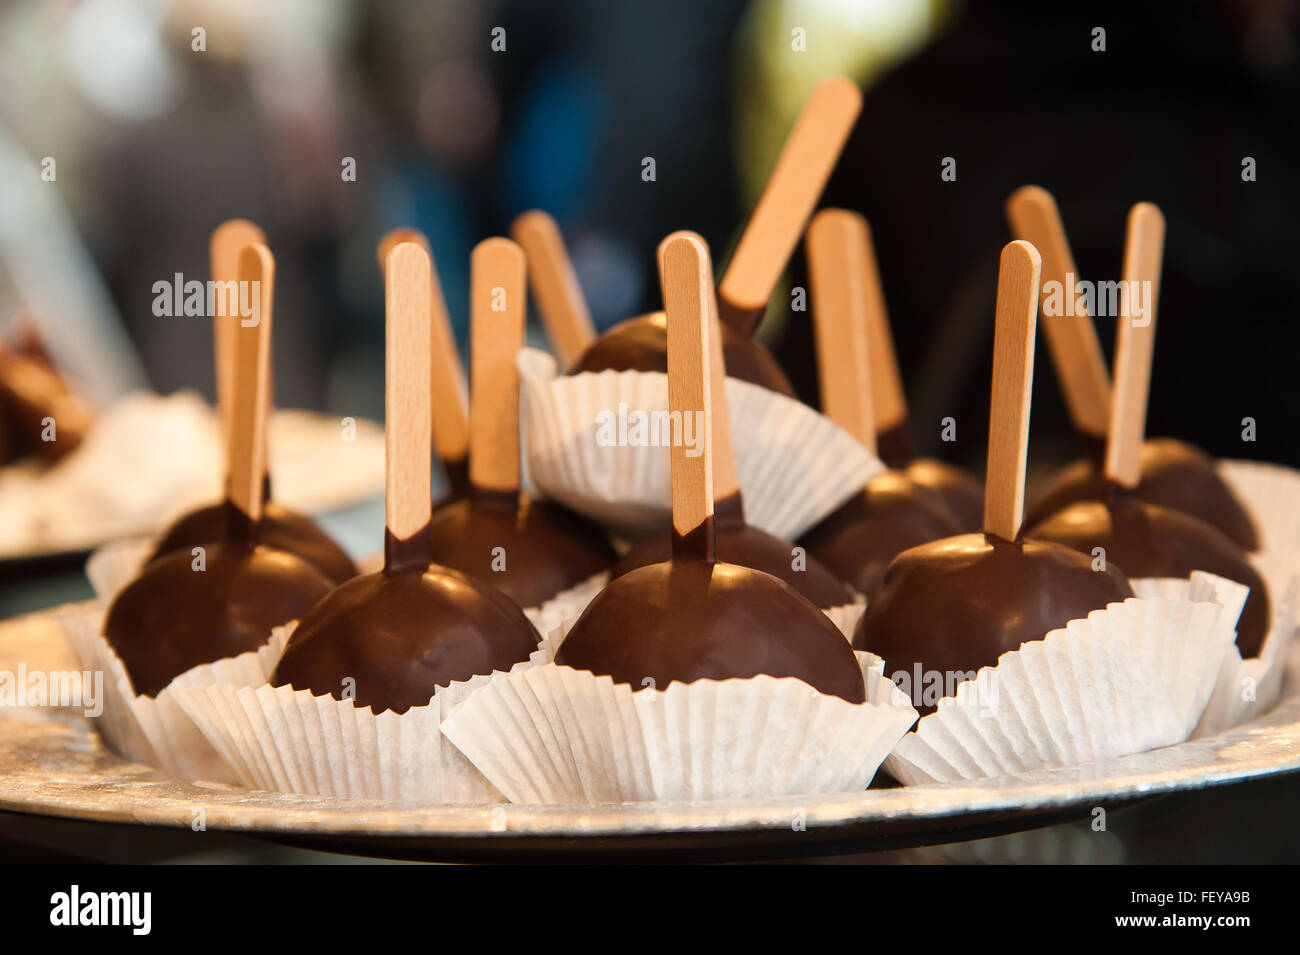 Dolce al cioccolato in pasticceria Foto Stock